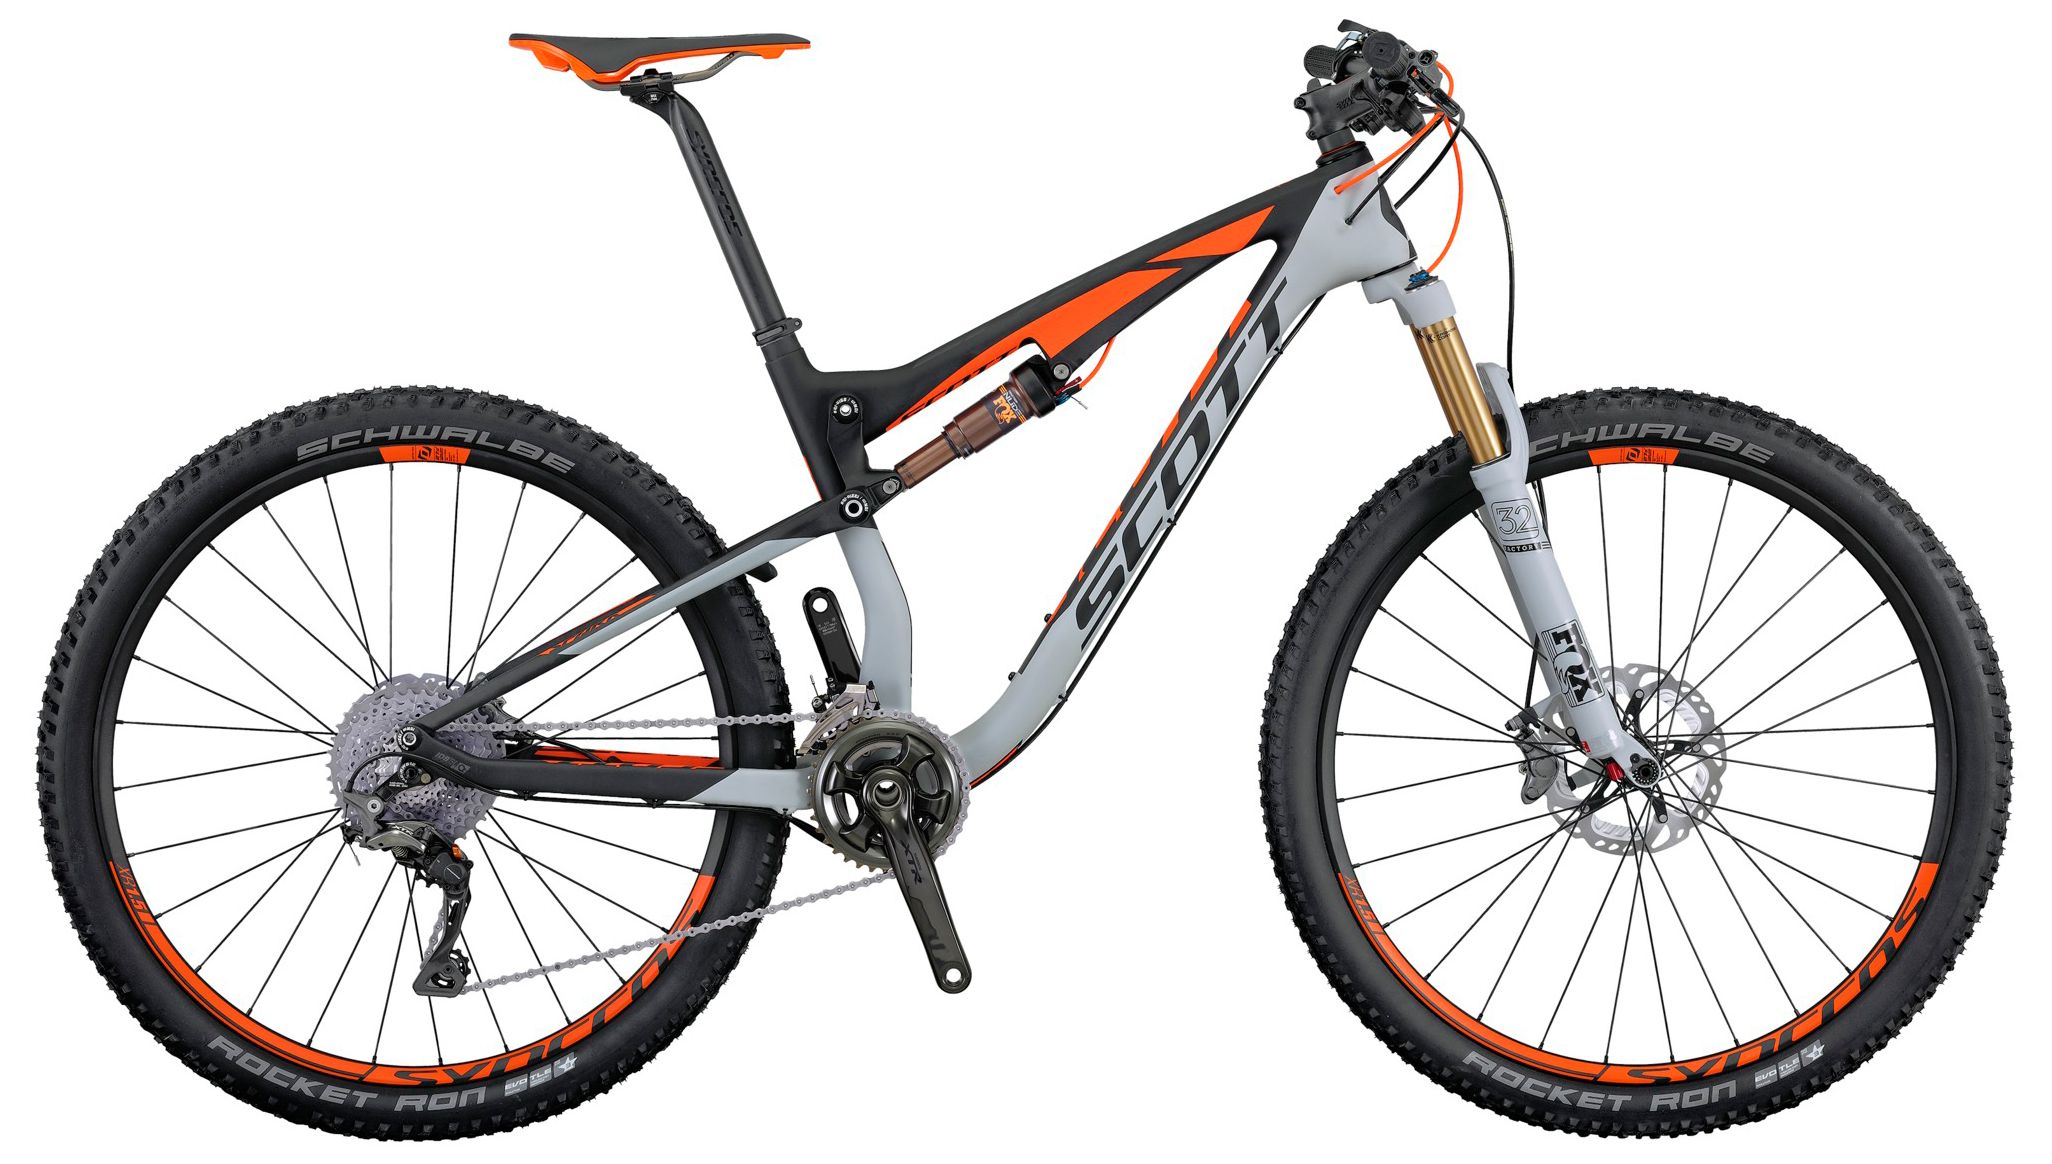  Отзывы о Двухподвесном велосипеде Scott Spark 700 Premium 2016